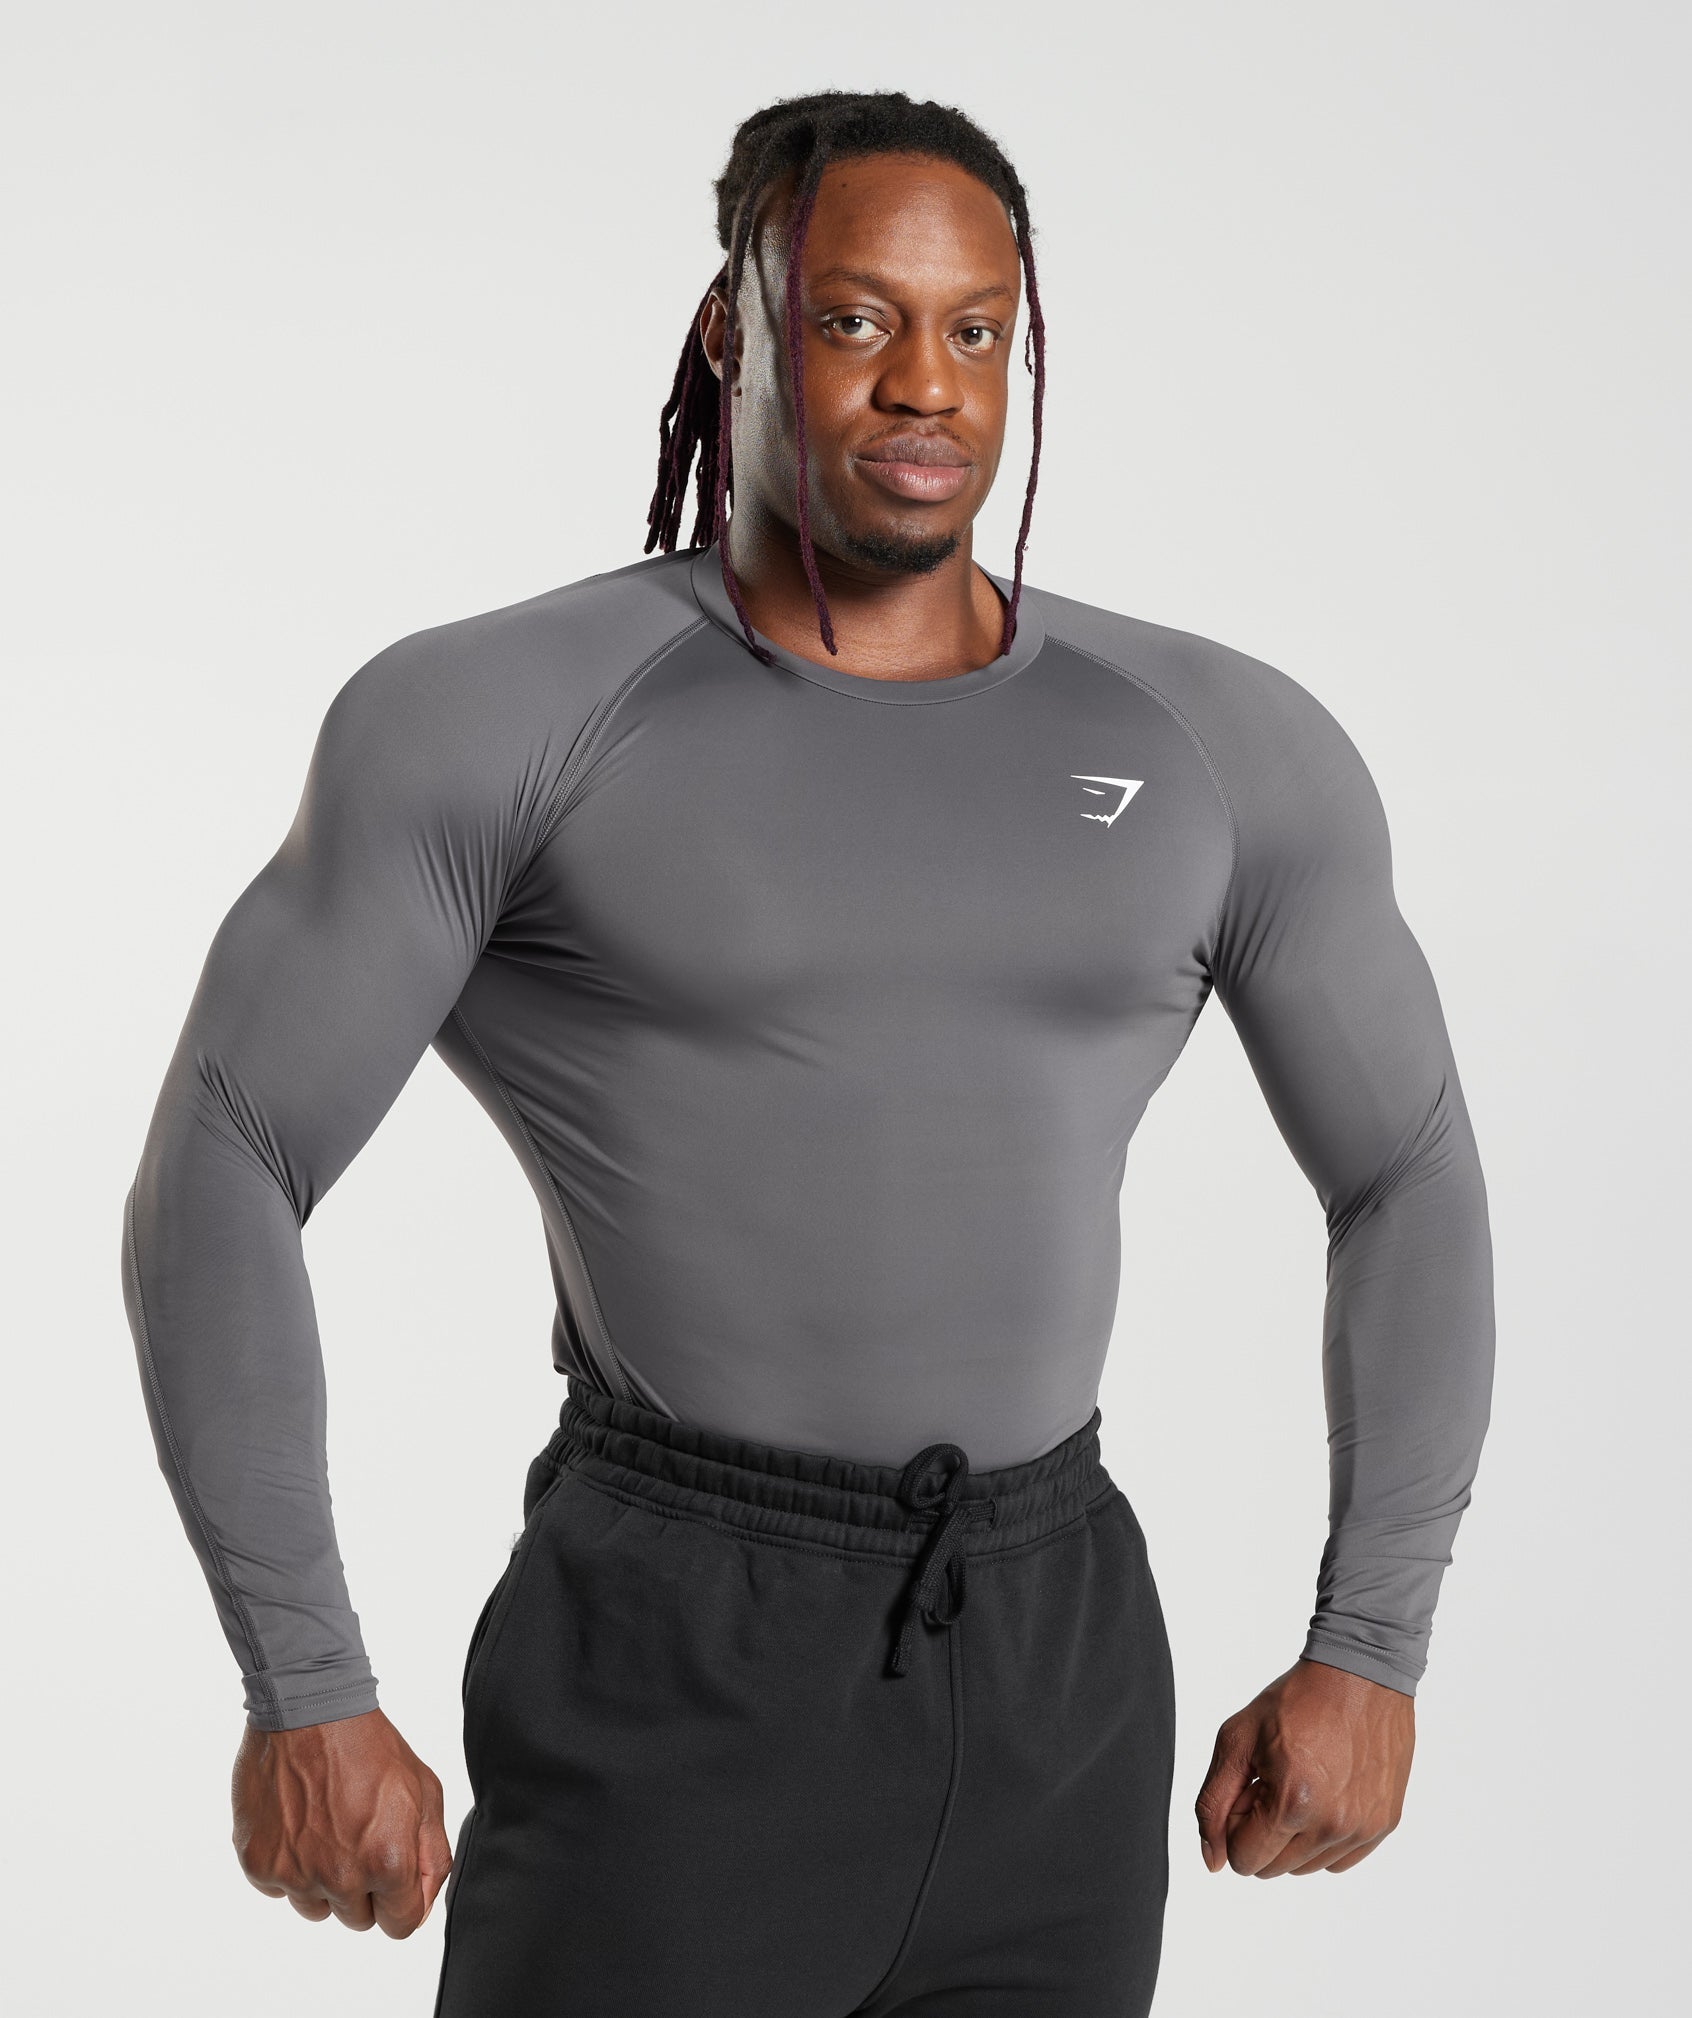 Gymshark Compression Shirt Mens M Teal Short Sleeve Base Layer